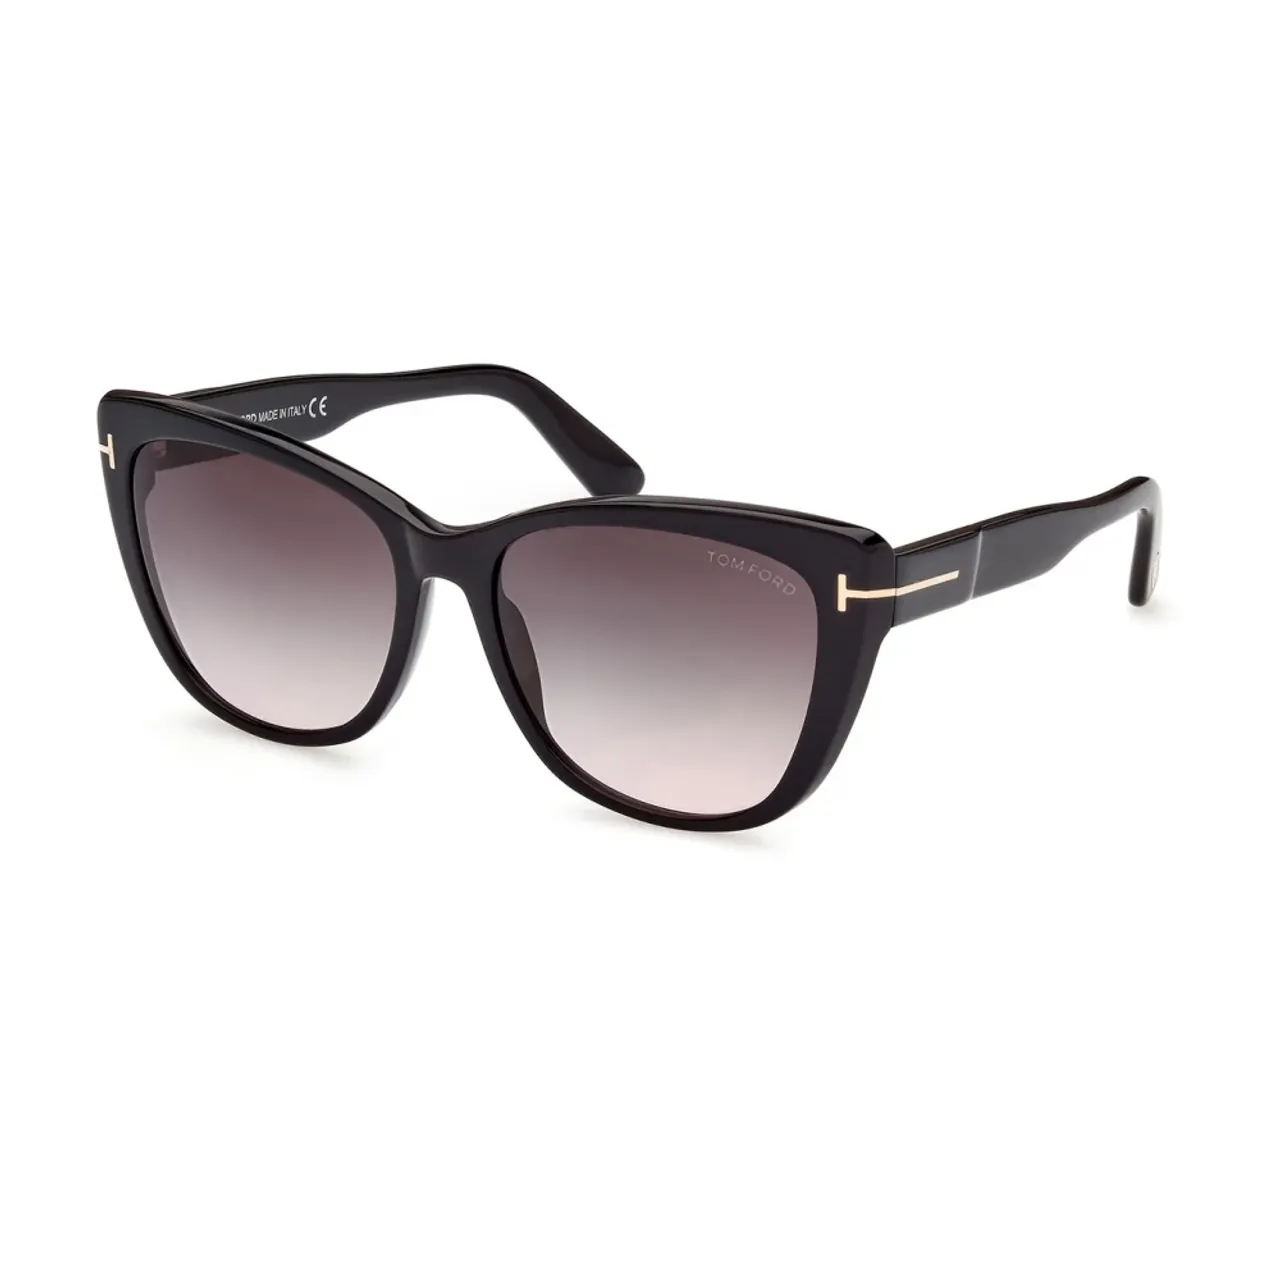 Tom Ford , Cat-Eye Sunglasses Grey Gradient Lenses ,Black unisex, Sizes: